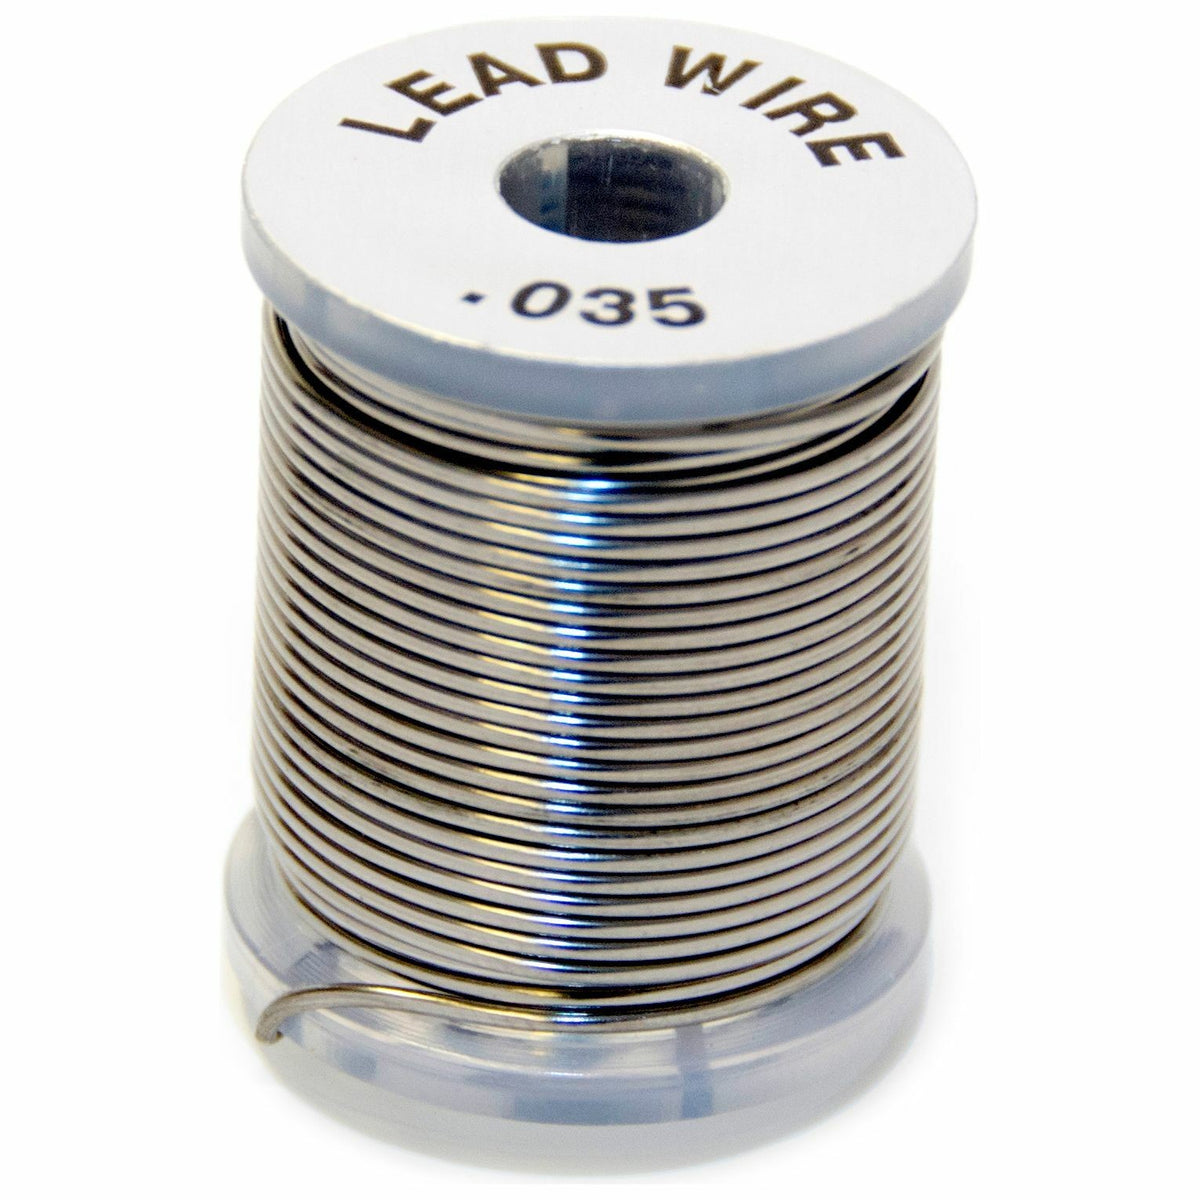 Wapsi Lead Wire 0.035 Heavy